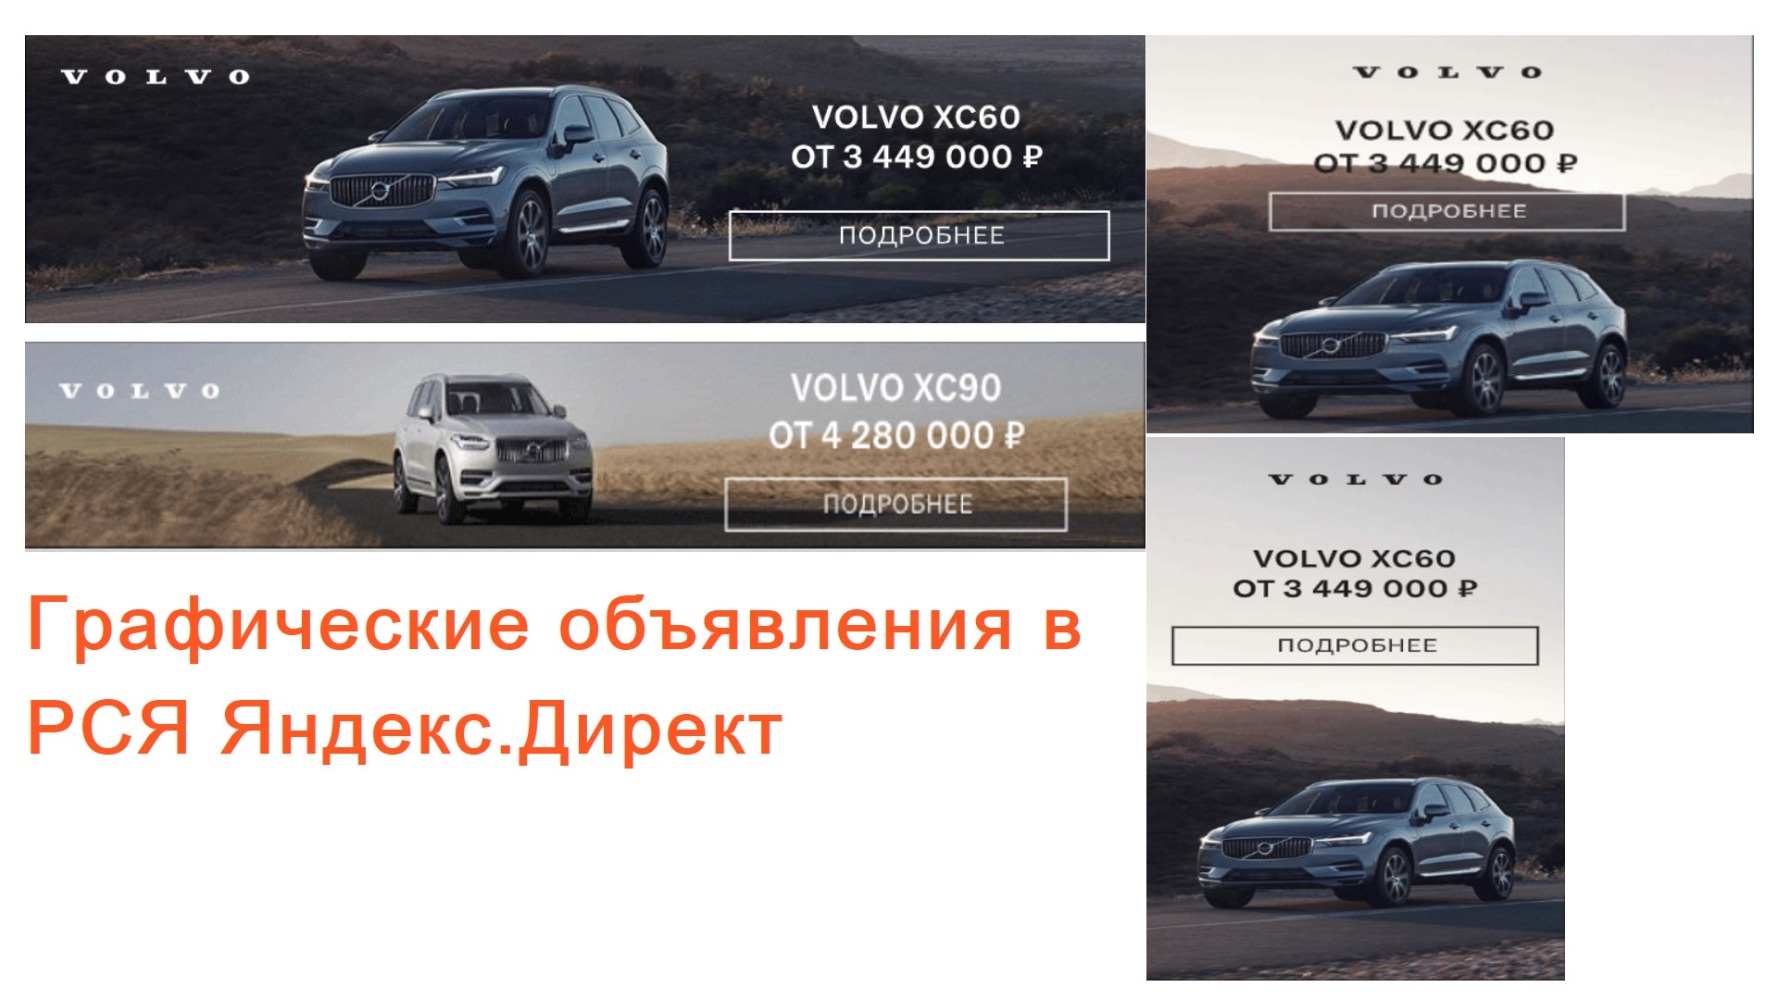 Volvo Car Кубань - Уменьшить стоимость лида на 73% и продать 78 автомобилей Вольво за 3 месяца